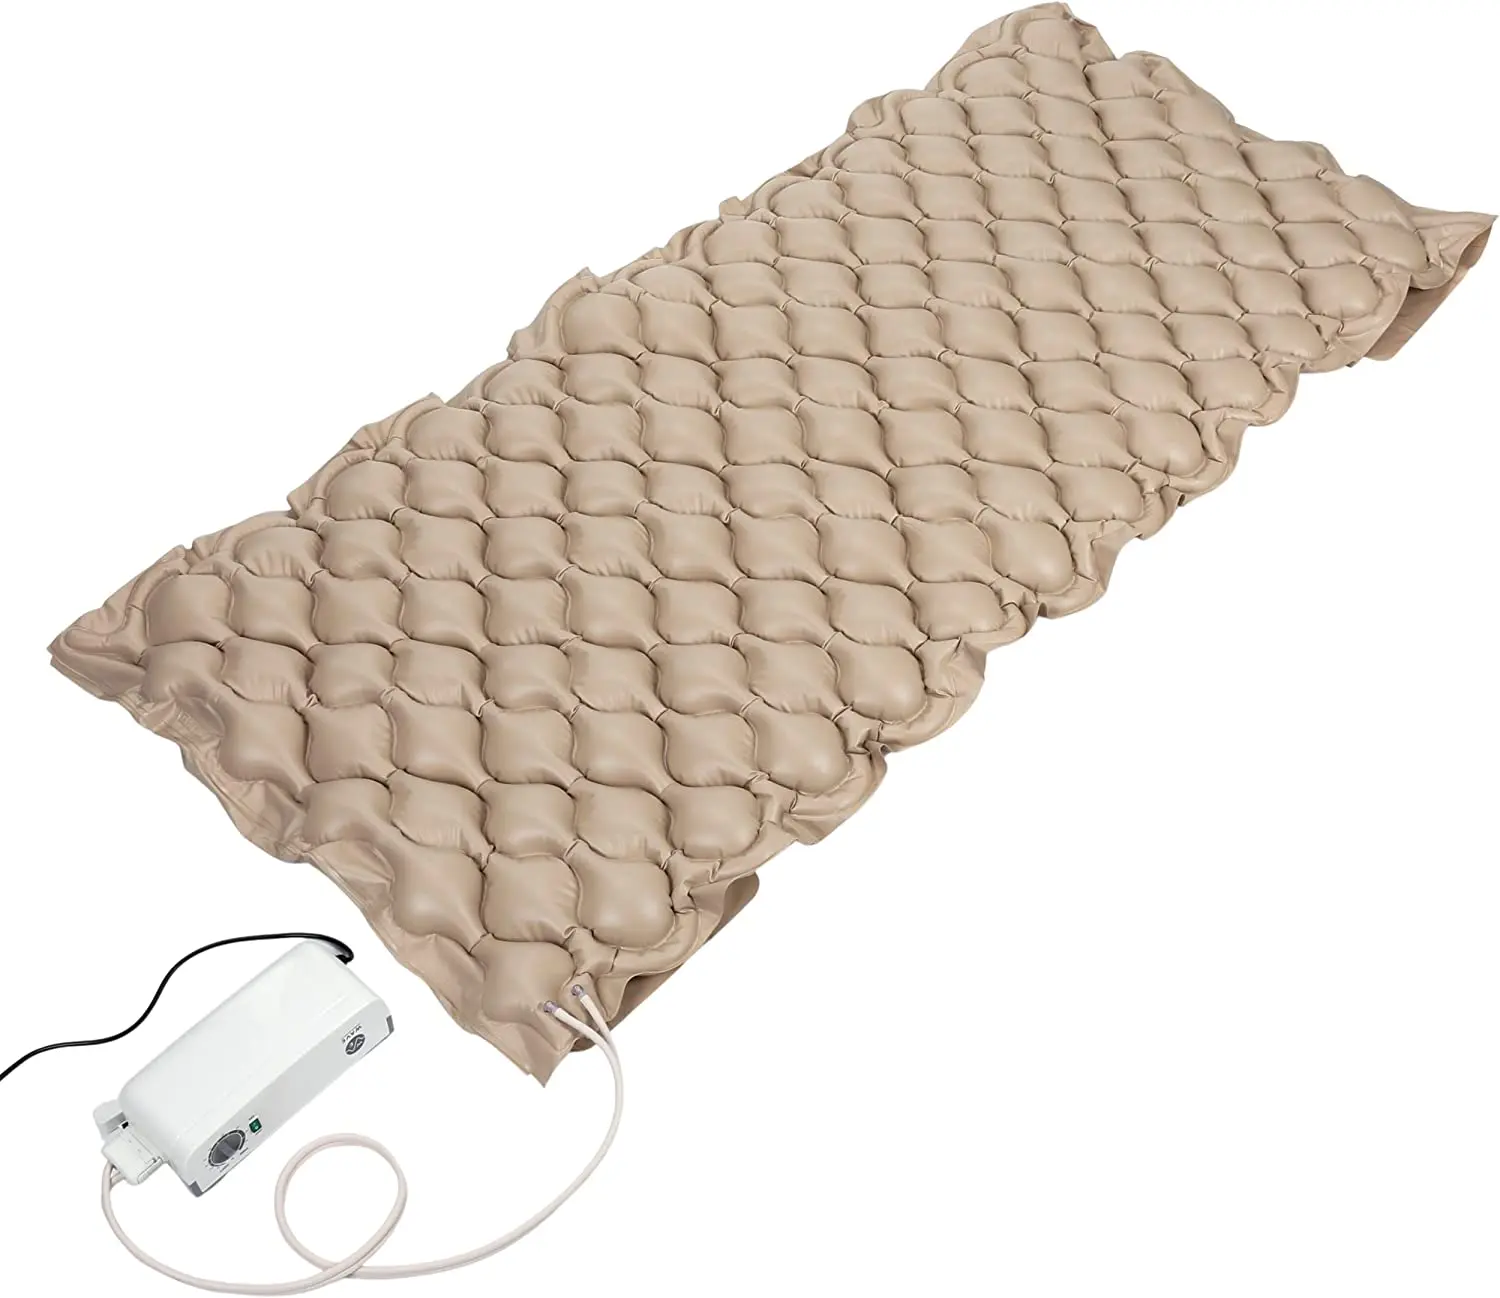 سرير طبي قابل للنفخ لإزالة قرحة السرير ومريحة بمضخة هواء متغيرة الضغط سرير طبي لإزالة قرحة السرير